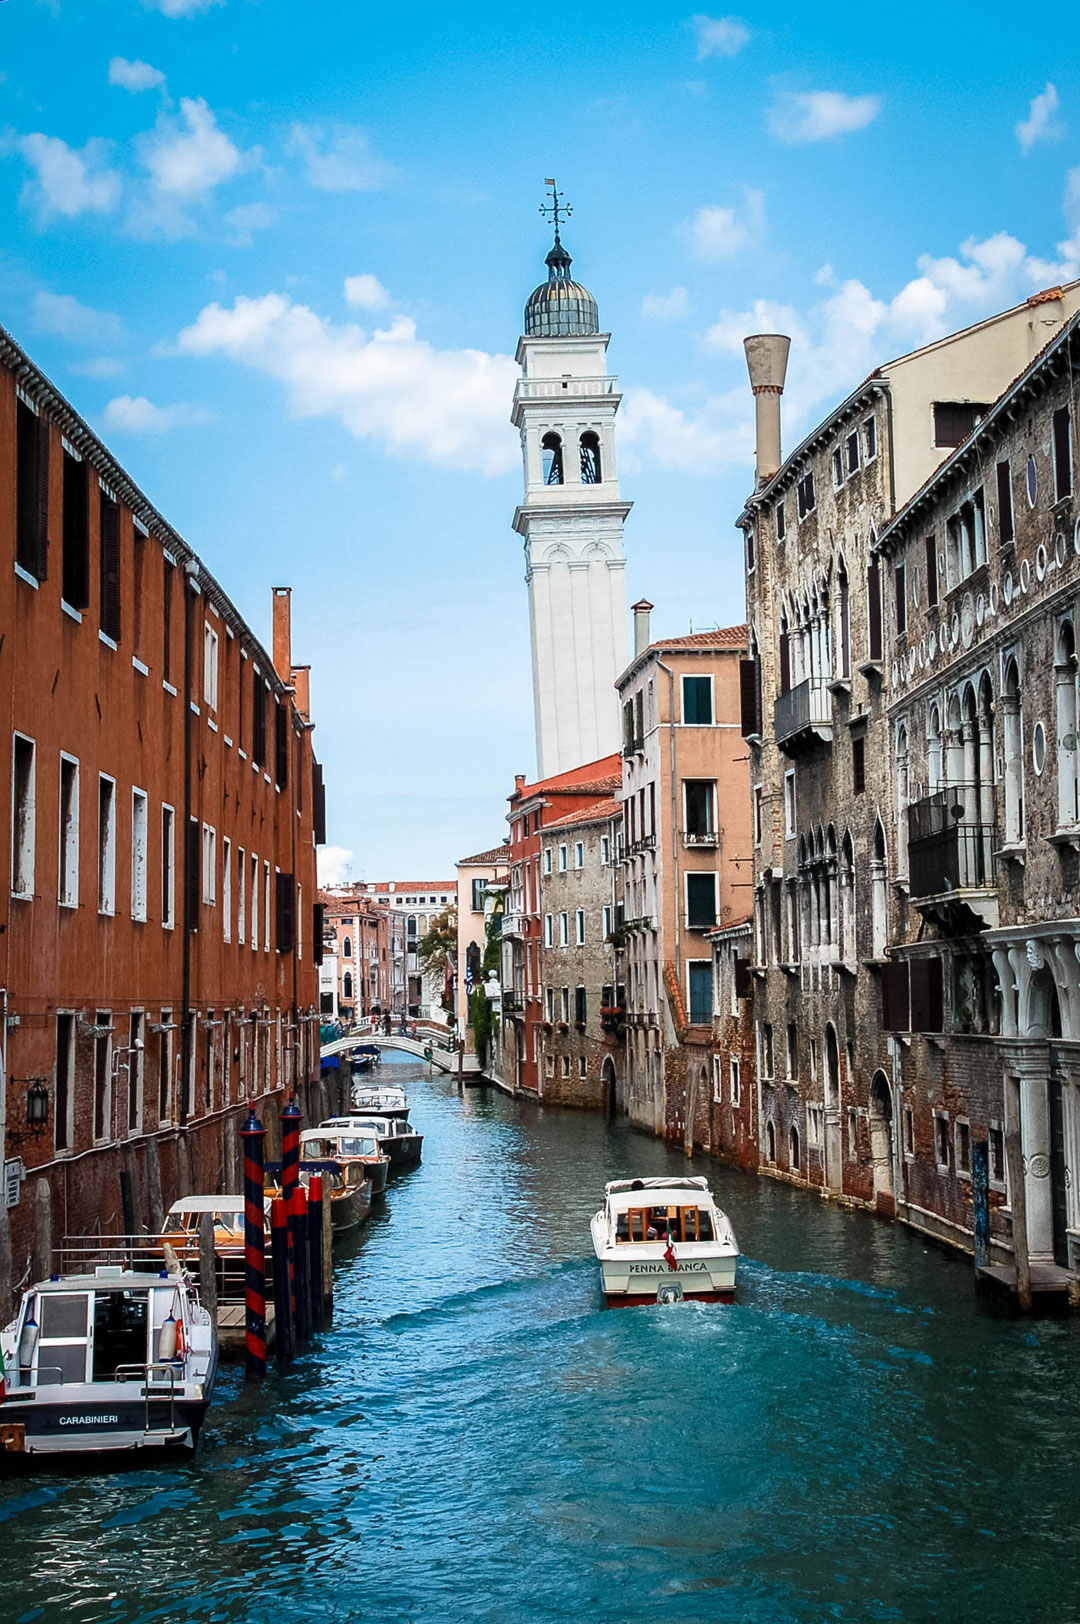 Der schiefe Turm von Venedig